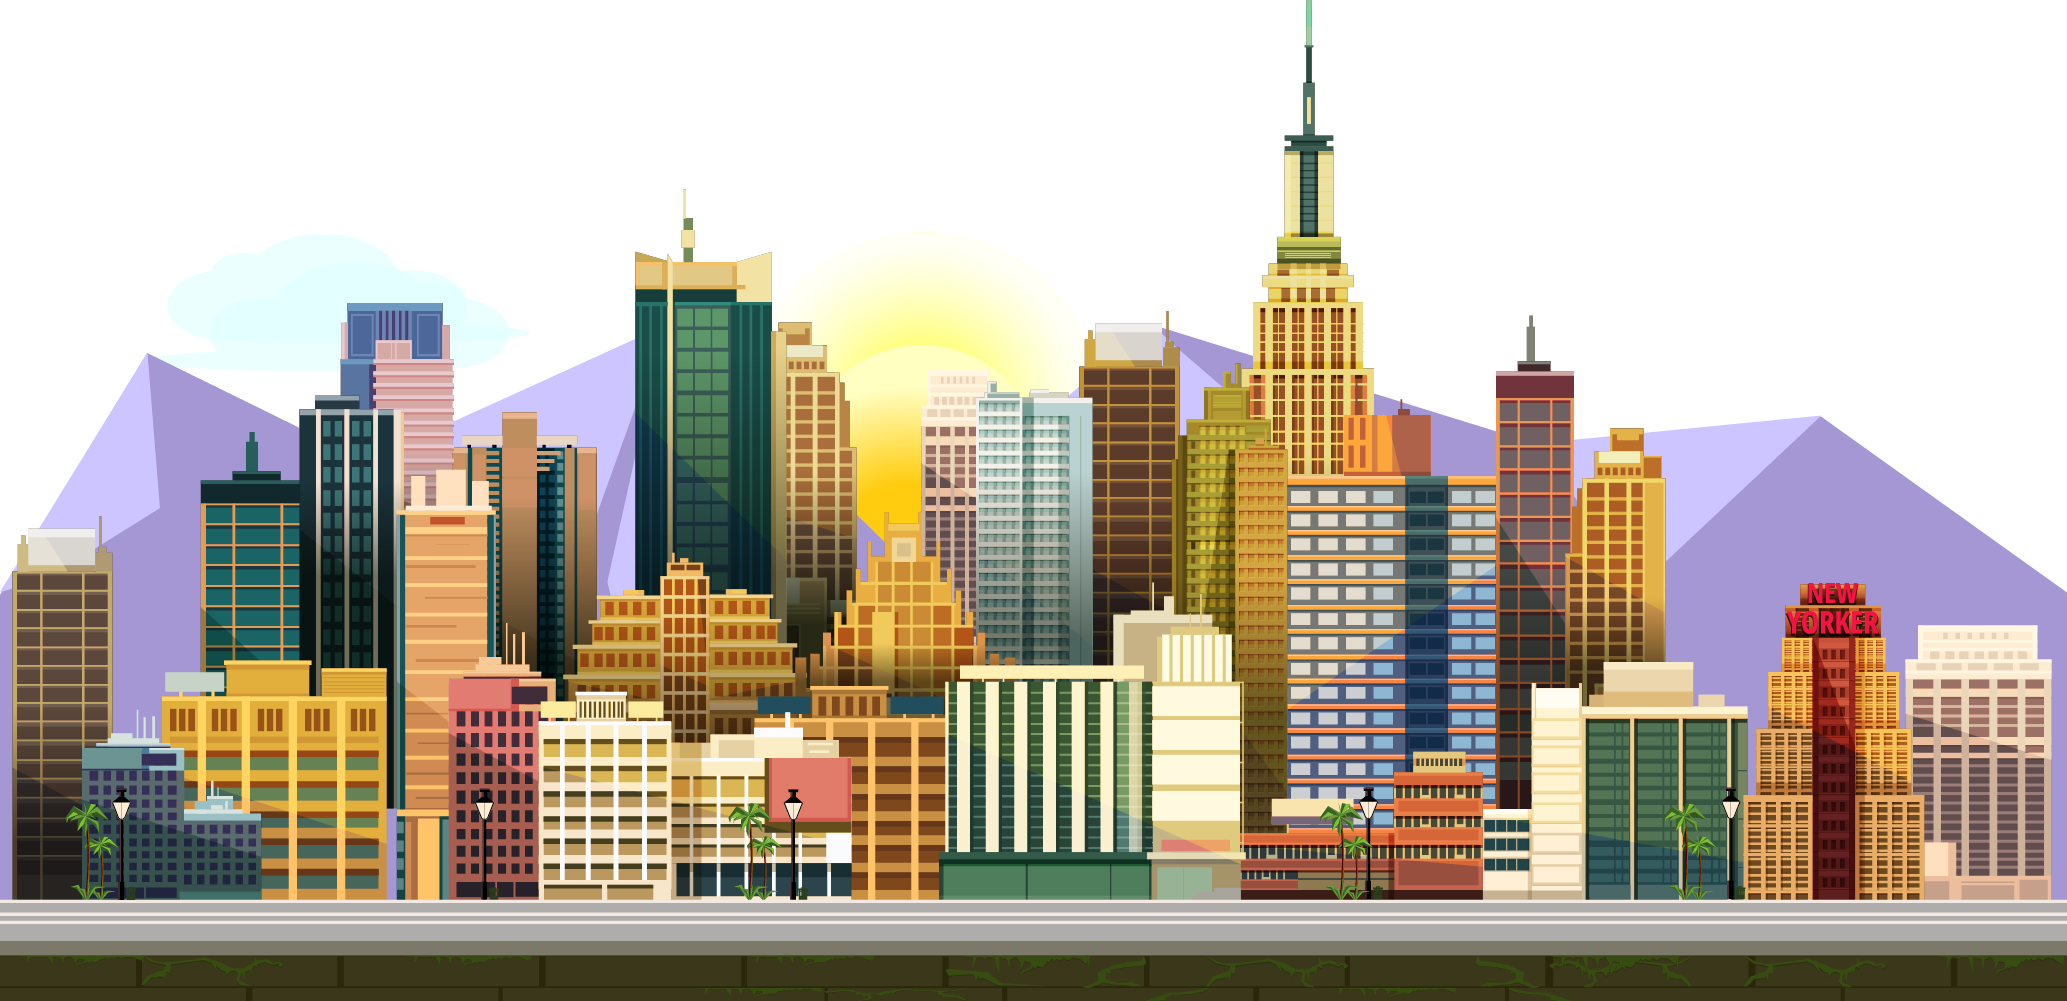 Đồ họa trò chơi thành phố sẽ giúp cho trò chơi của bạn trở nên độc đáo và thú vị hơn bao giờ hết. Với các đối tượng như nhà, tòa nhà, phương tiện giao thông, bạn có thể tạo ra một thế giới đầy màu sắc và sống động cho người chơi.